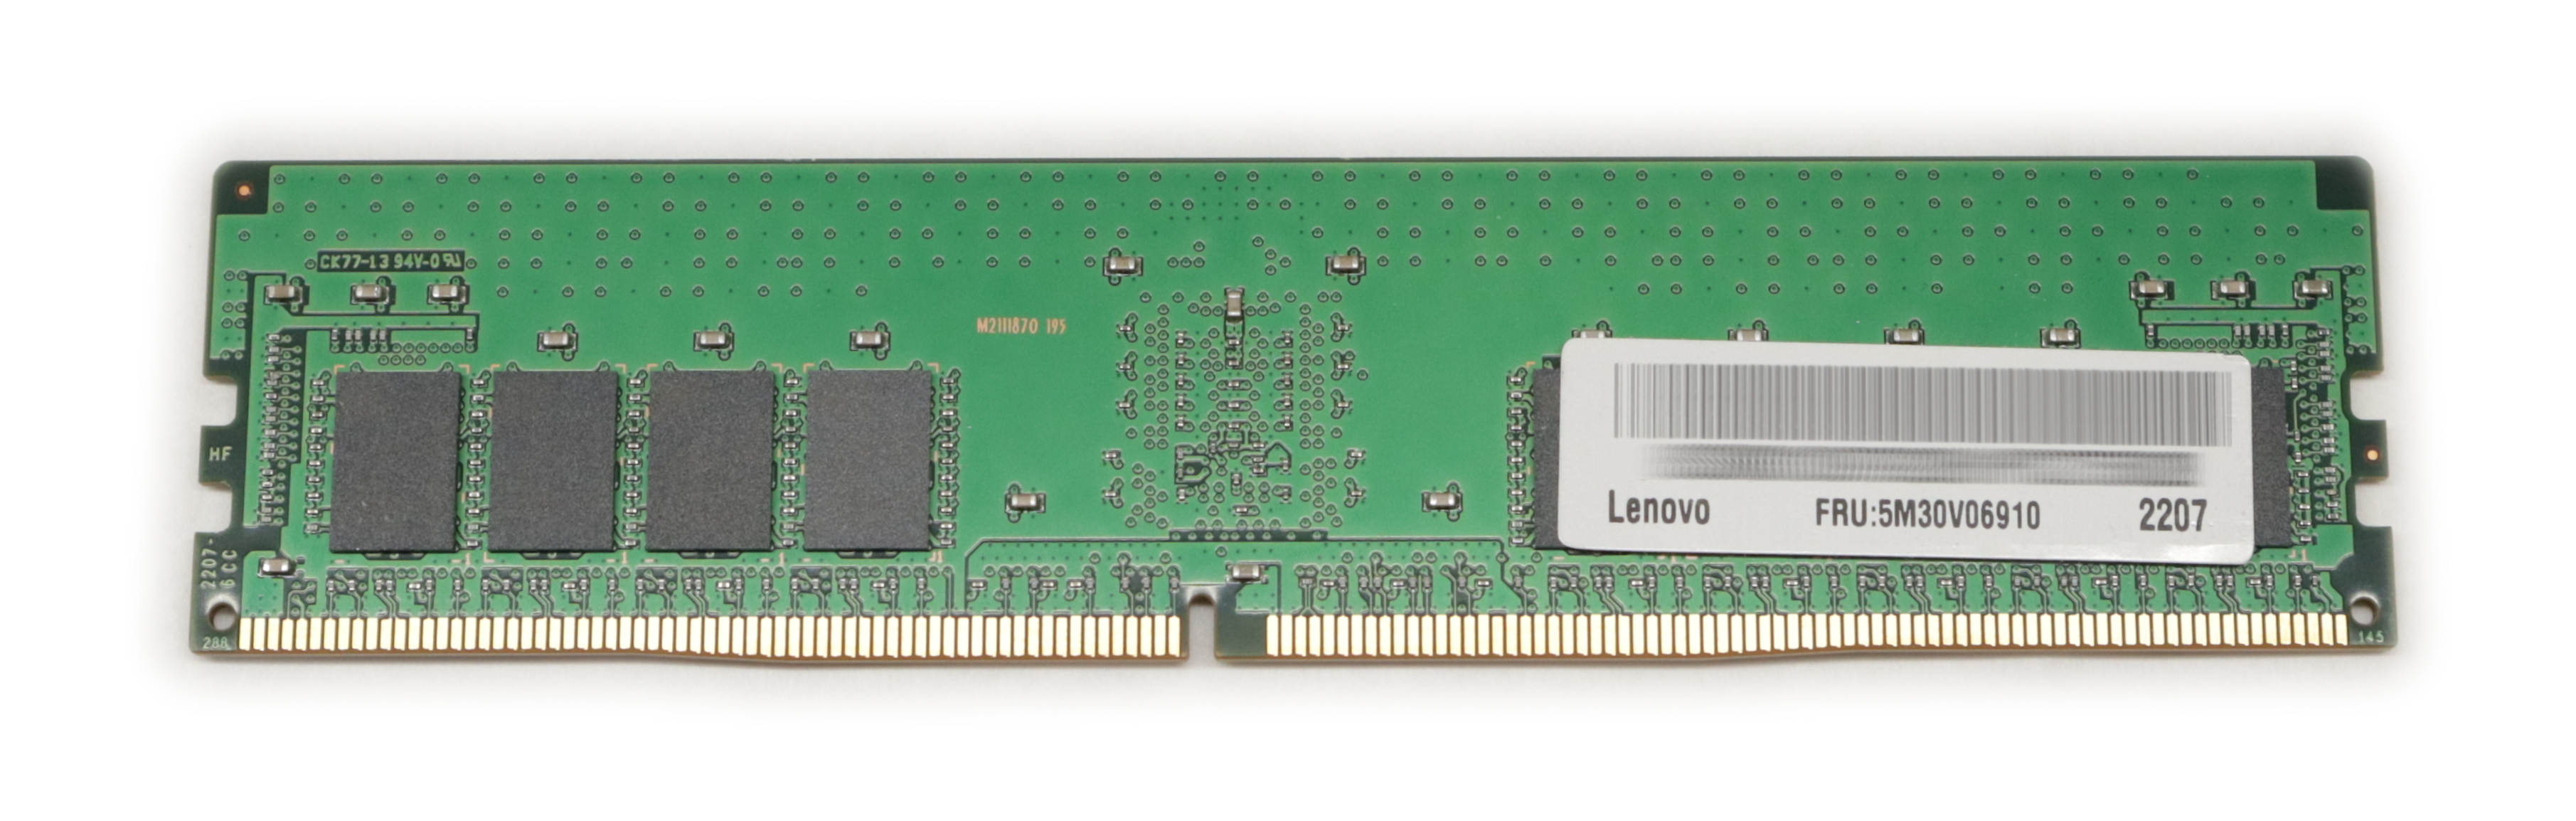 Lenovo 16GB DDR4 3200Mhz 288-pin ECC reg 1.2V 5M30V06910 4X71B67860